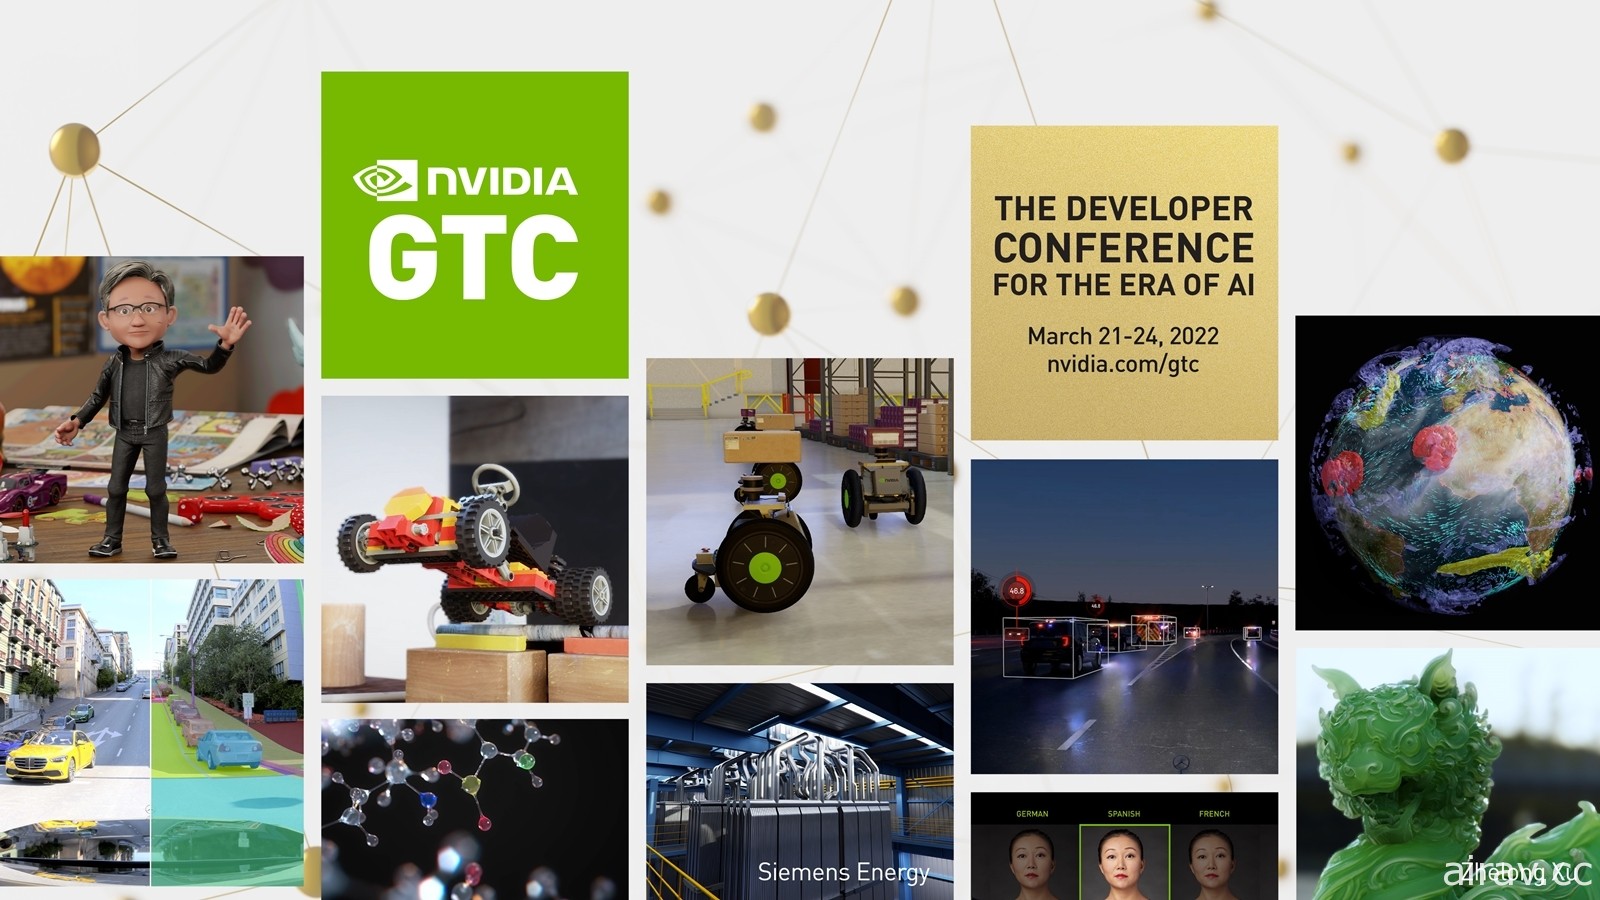 NVIDIA GTC 2022 将于 3 月下旬登场 执行长黄仁勋将发表主题演讲及全新产品